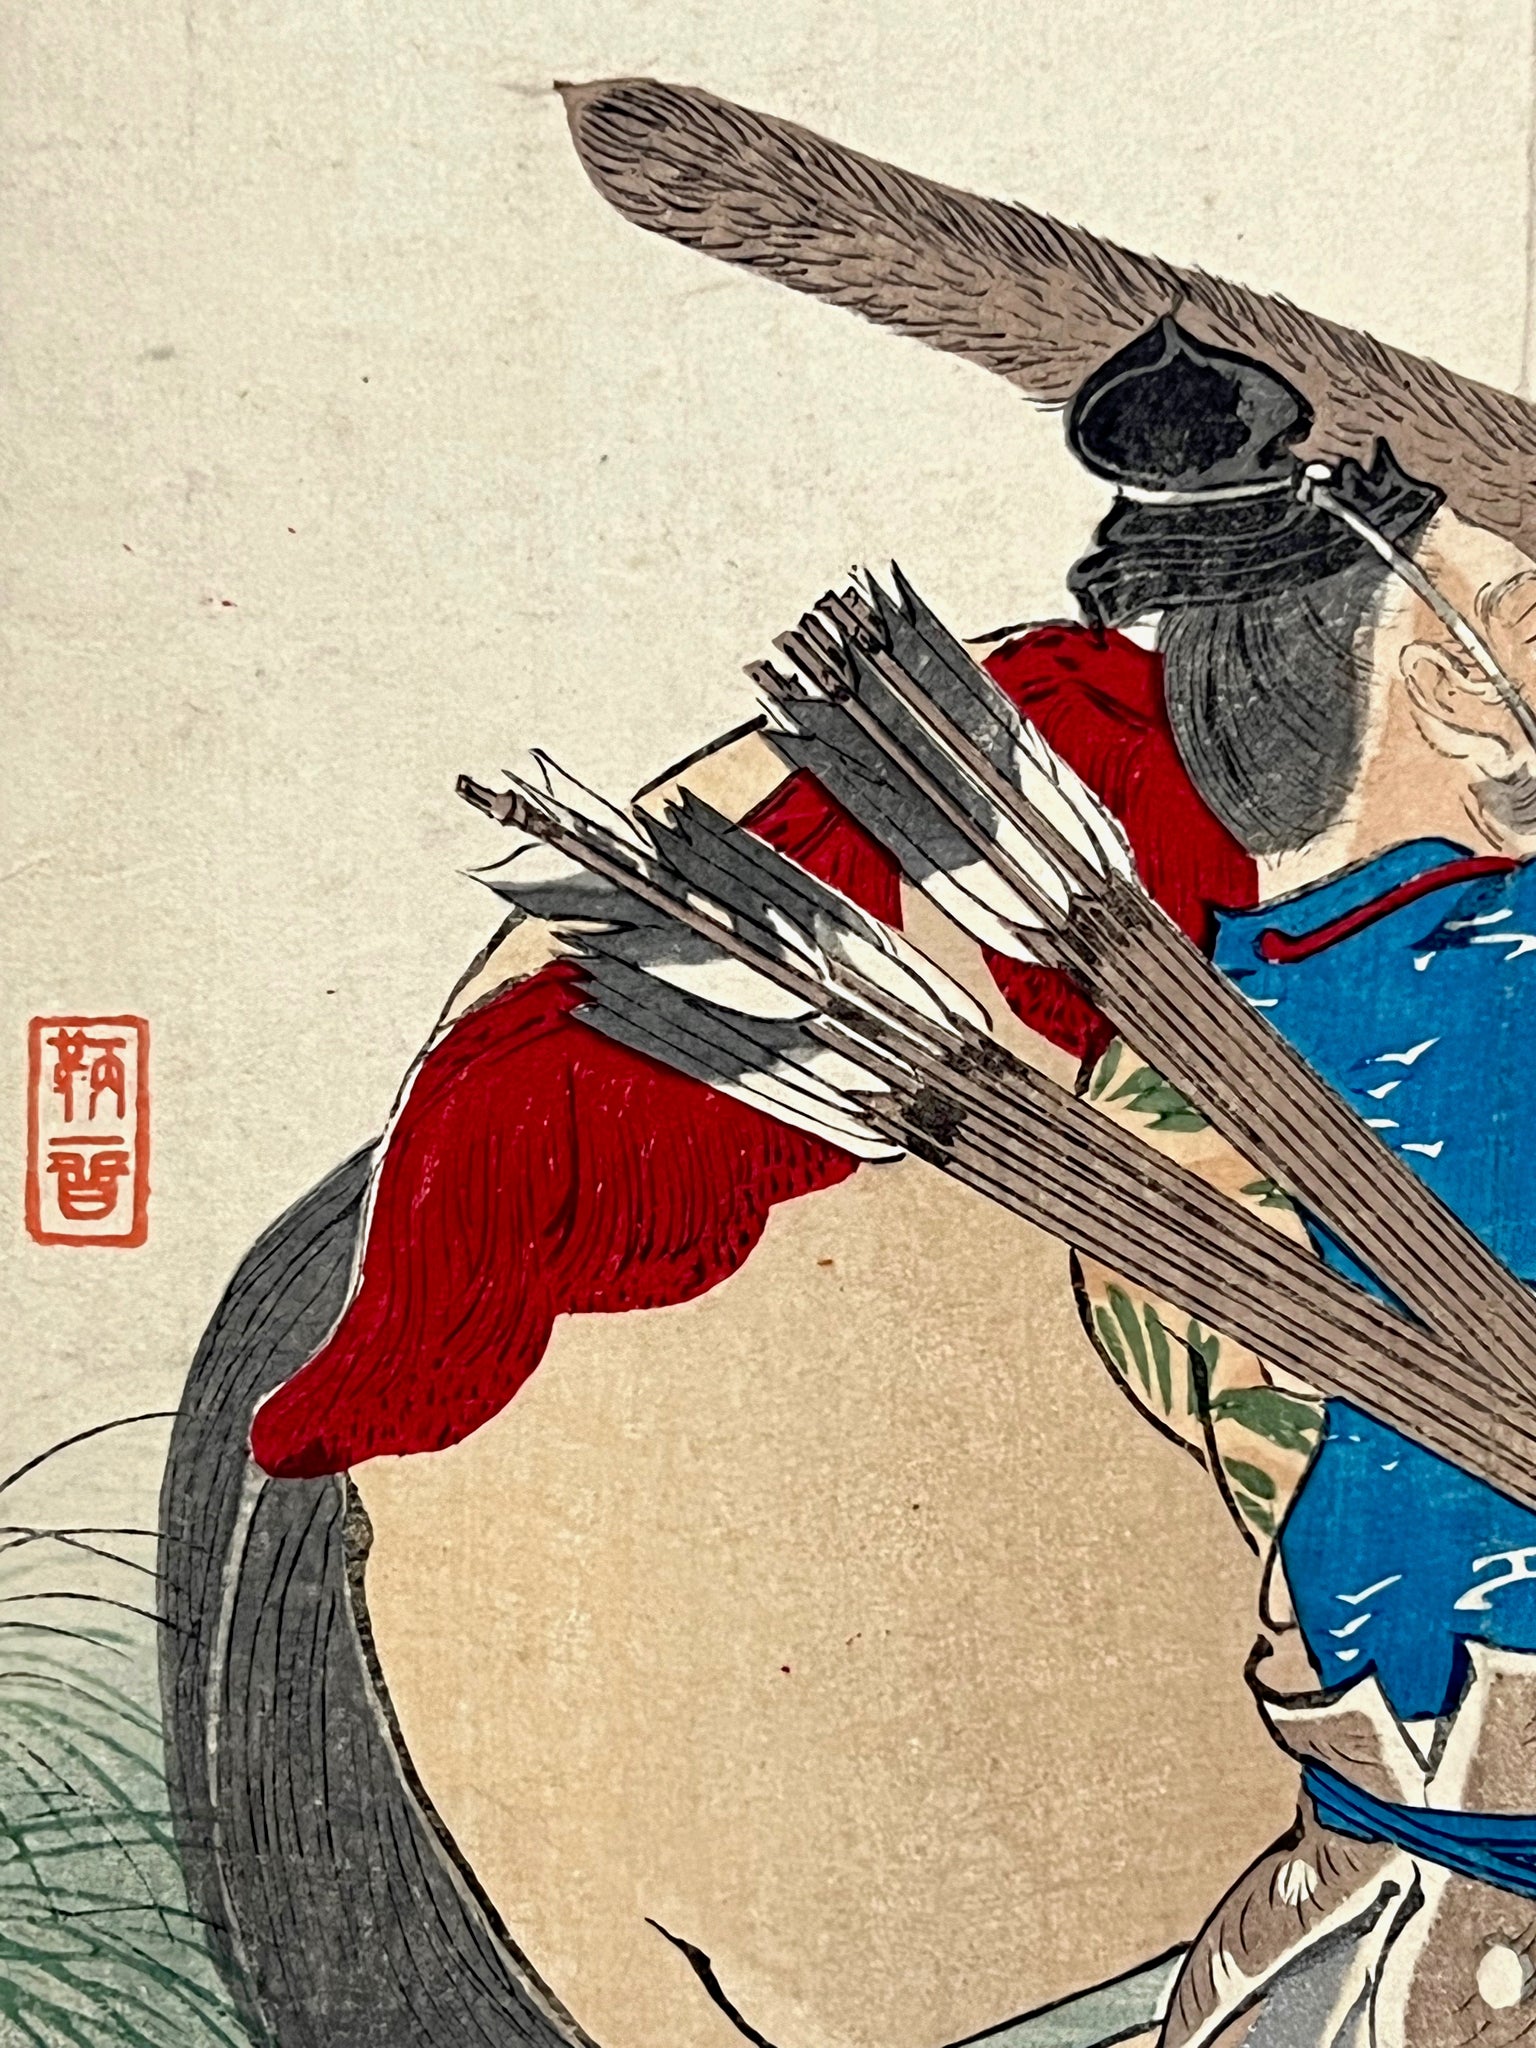 estampe japonaise shogun sur un cheval avec arc et flèche, signature de l'artiste